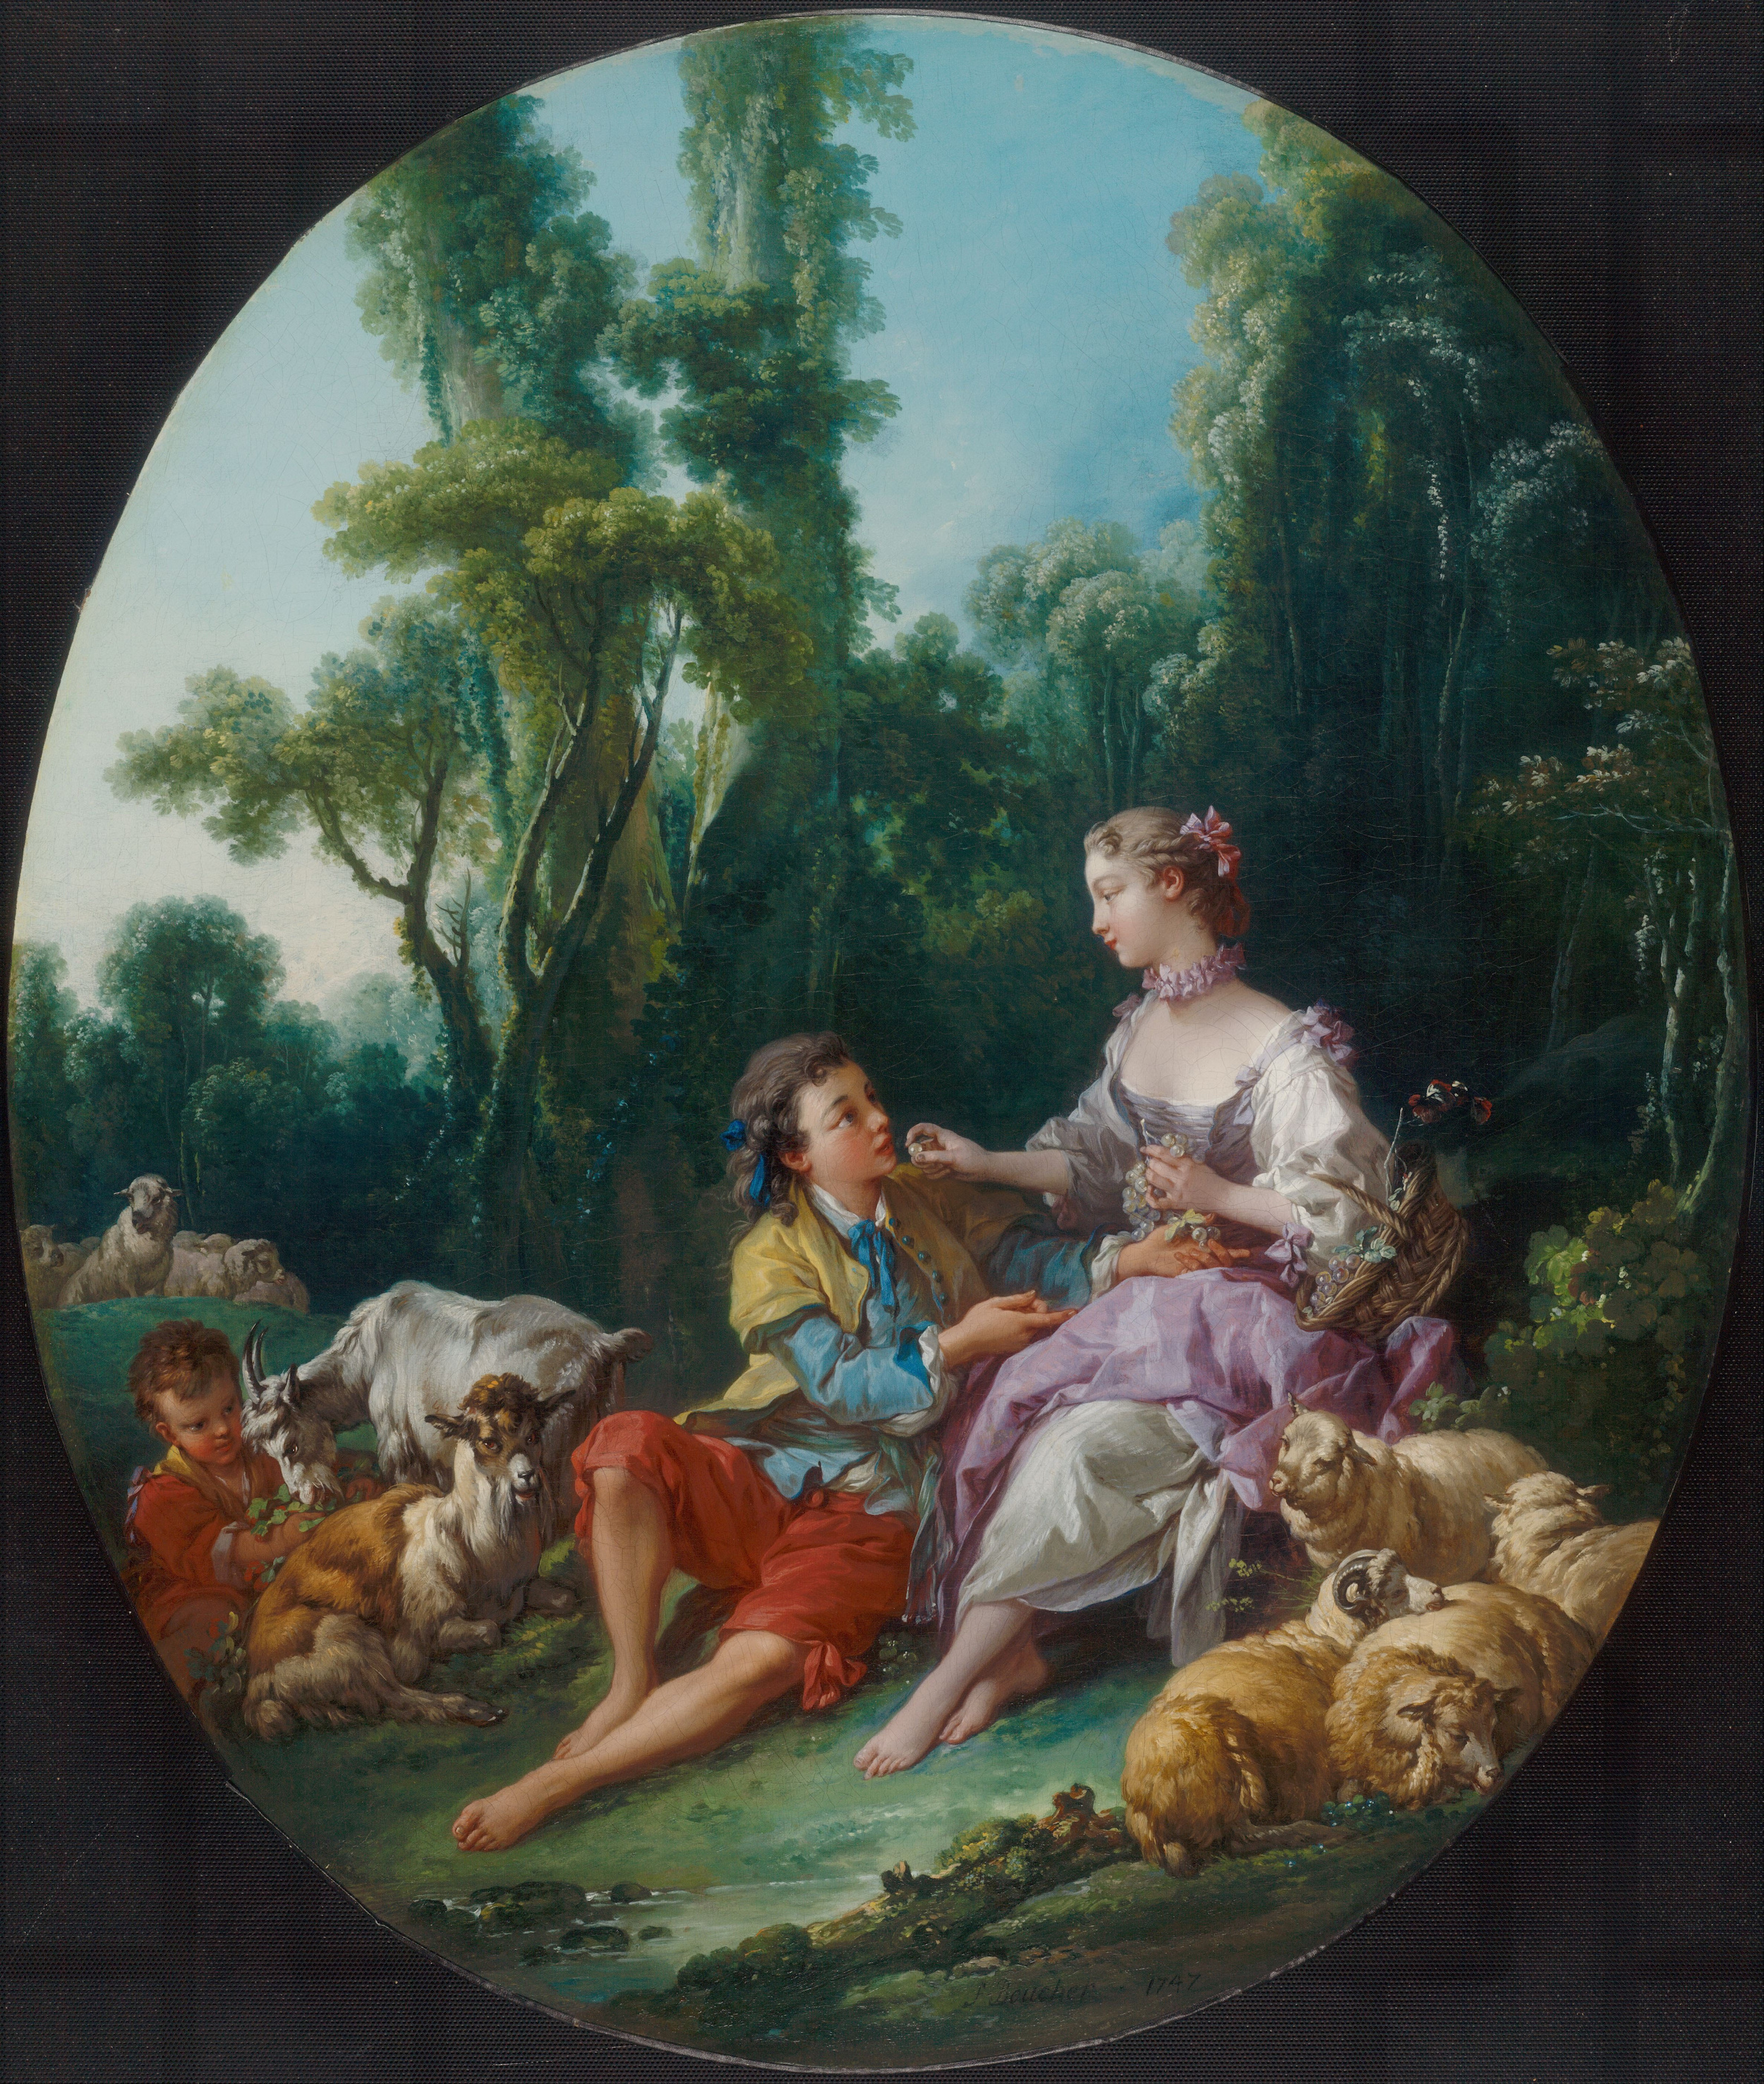 Denken Ze aan de Druif?  by Francois Boucher - 1747 - 80.8 x 68.5 cm 